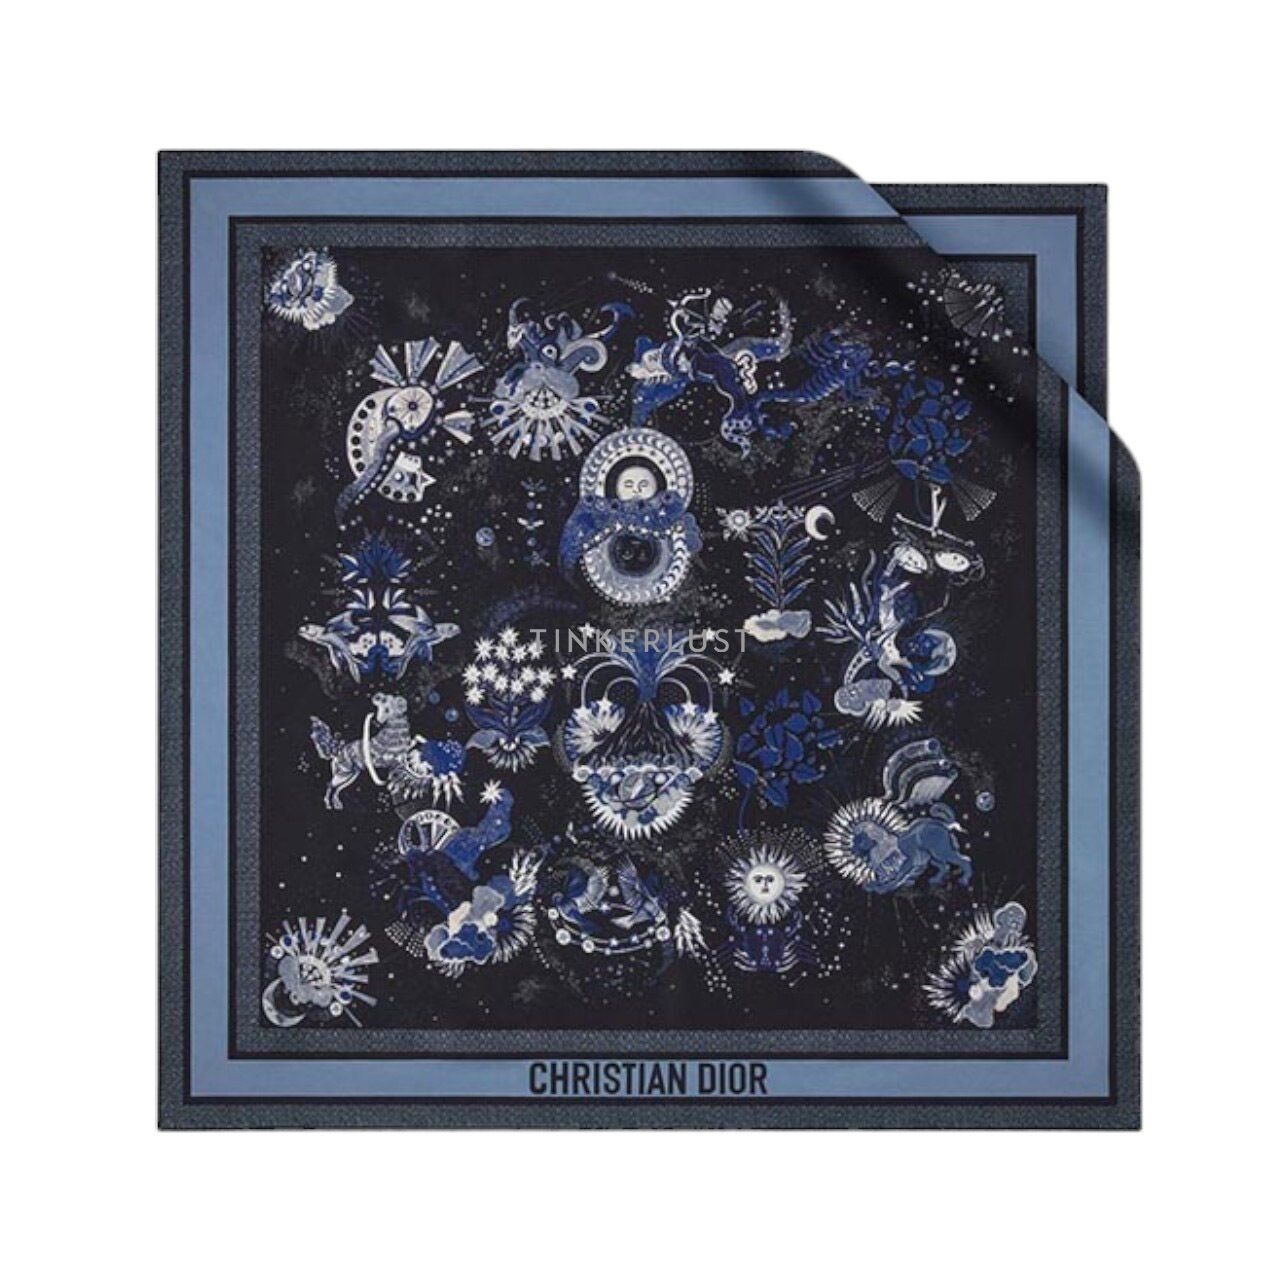 Christian Dior Zodiac Fantastico 90 Square Scarf in Dark Blue Muticolor Silk Twill